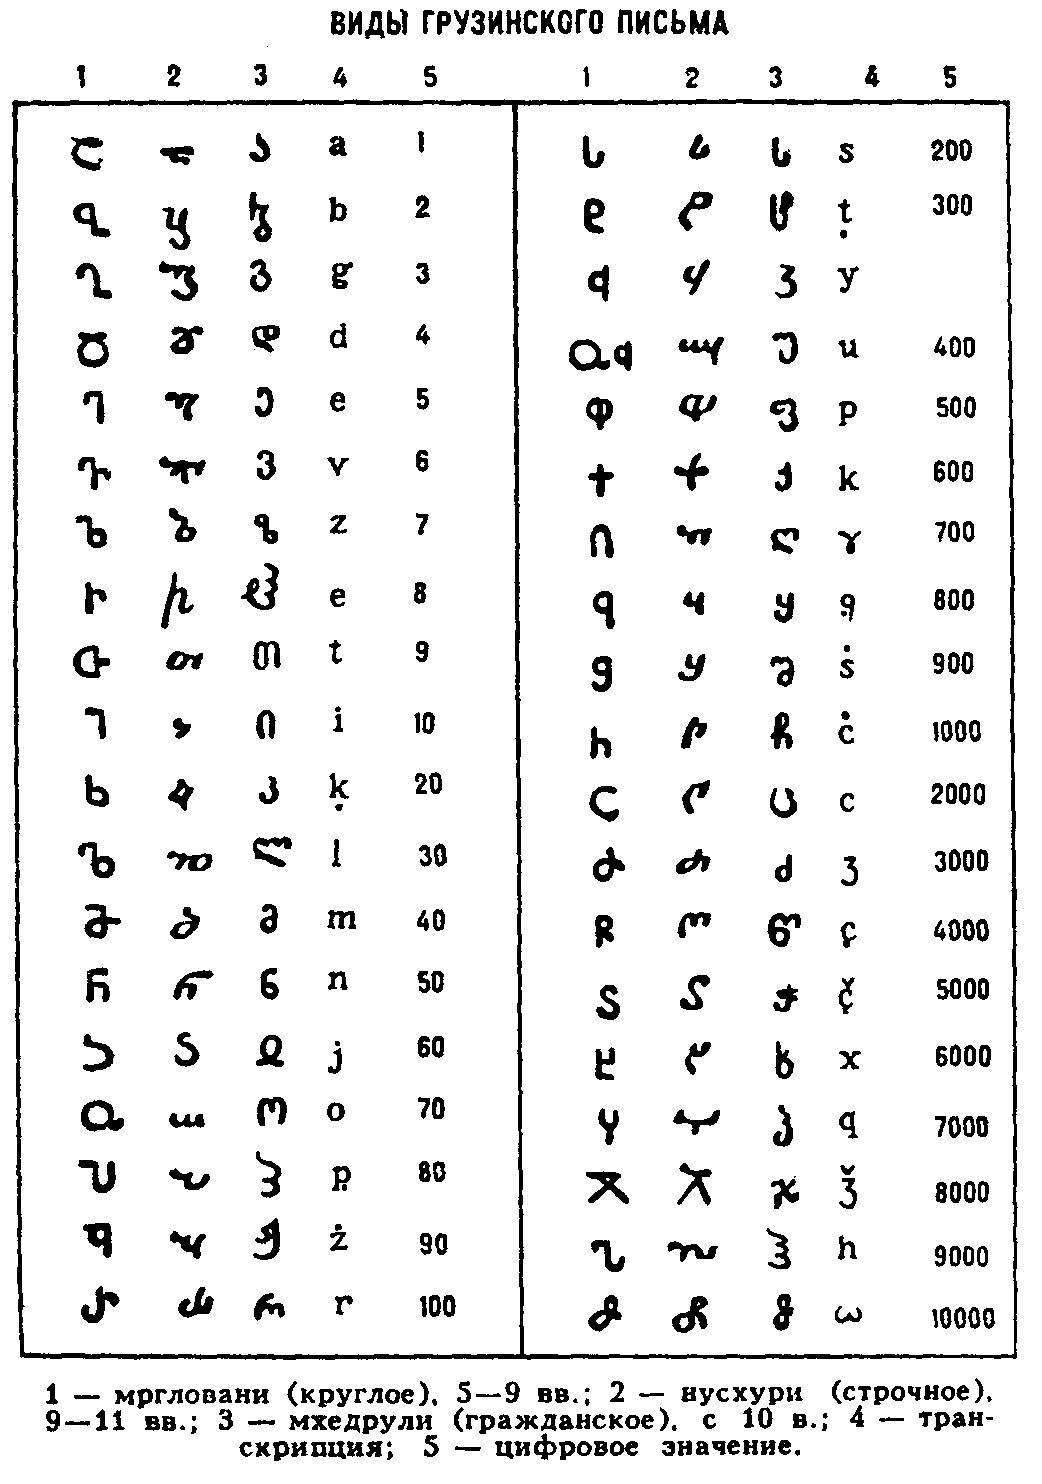 Виды
грузинского письма